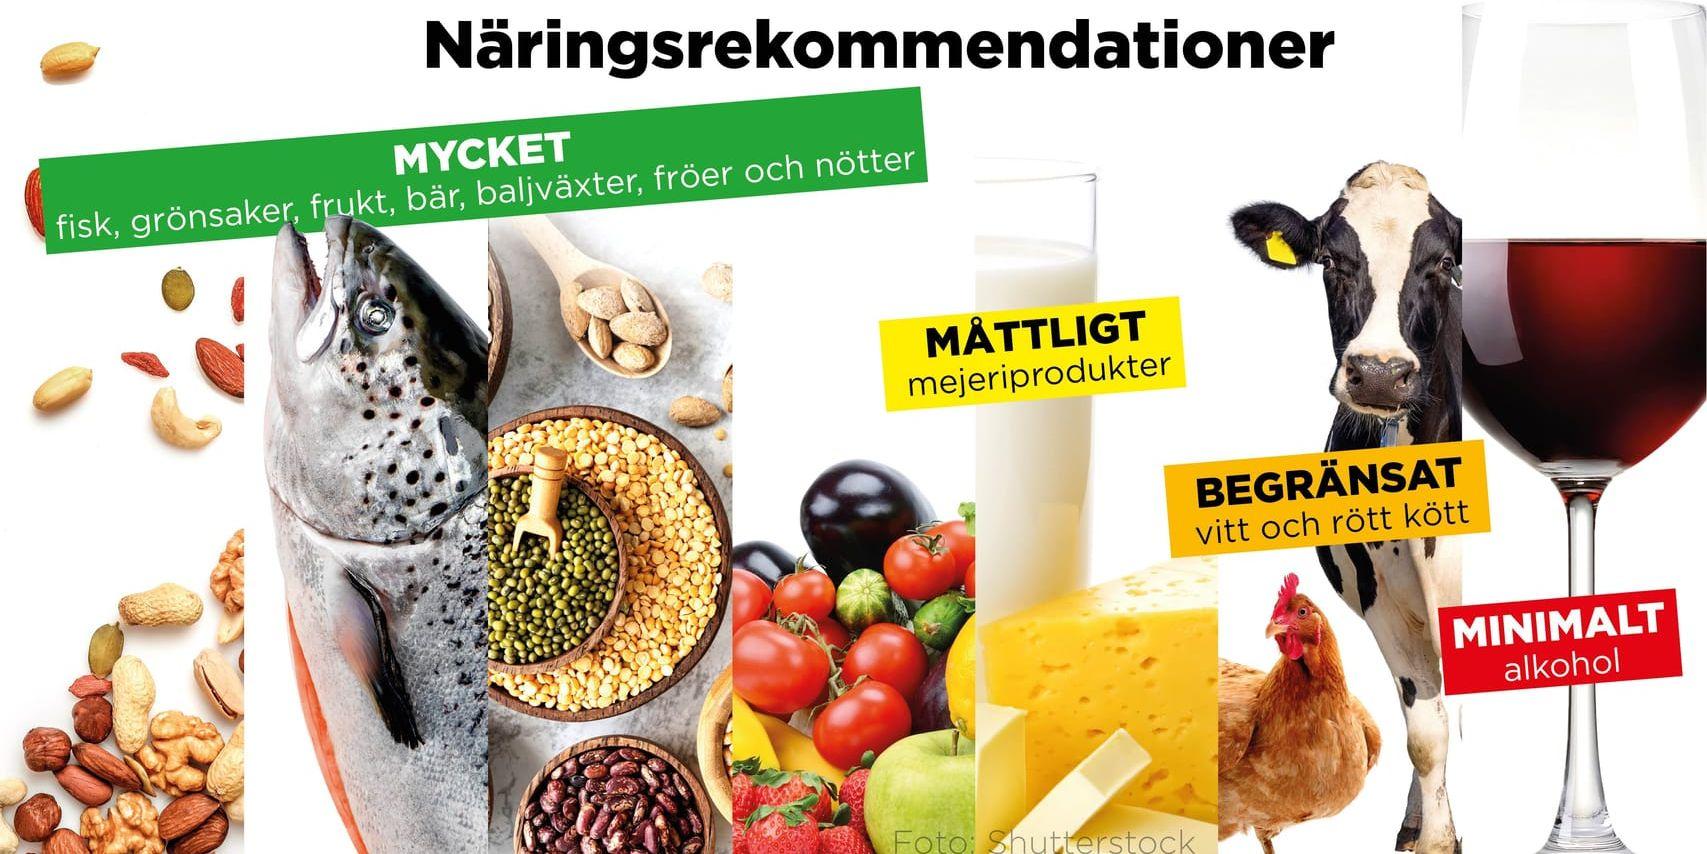 Mindre rött kött och helst ingen alkohol alls, det är de nya nordiska näringsrekommendationerna för hälsan och klimatets skull.